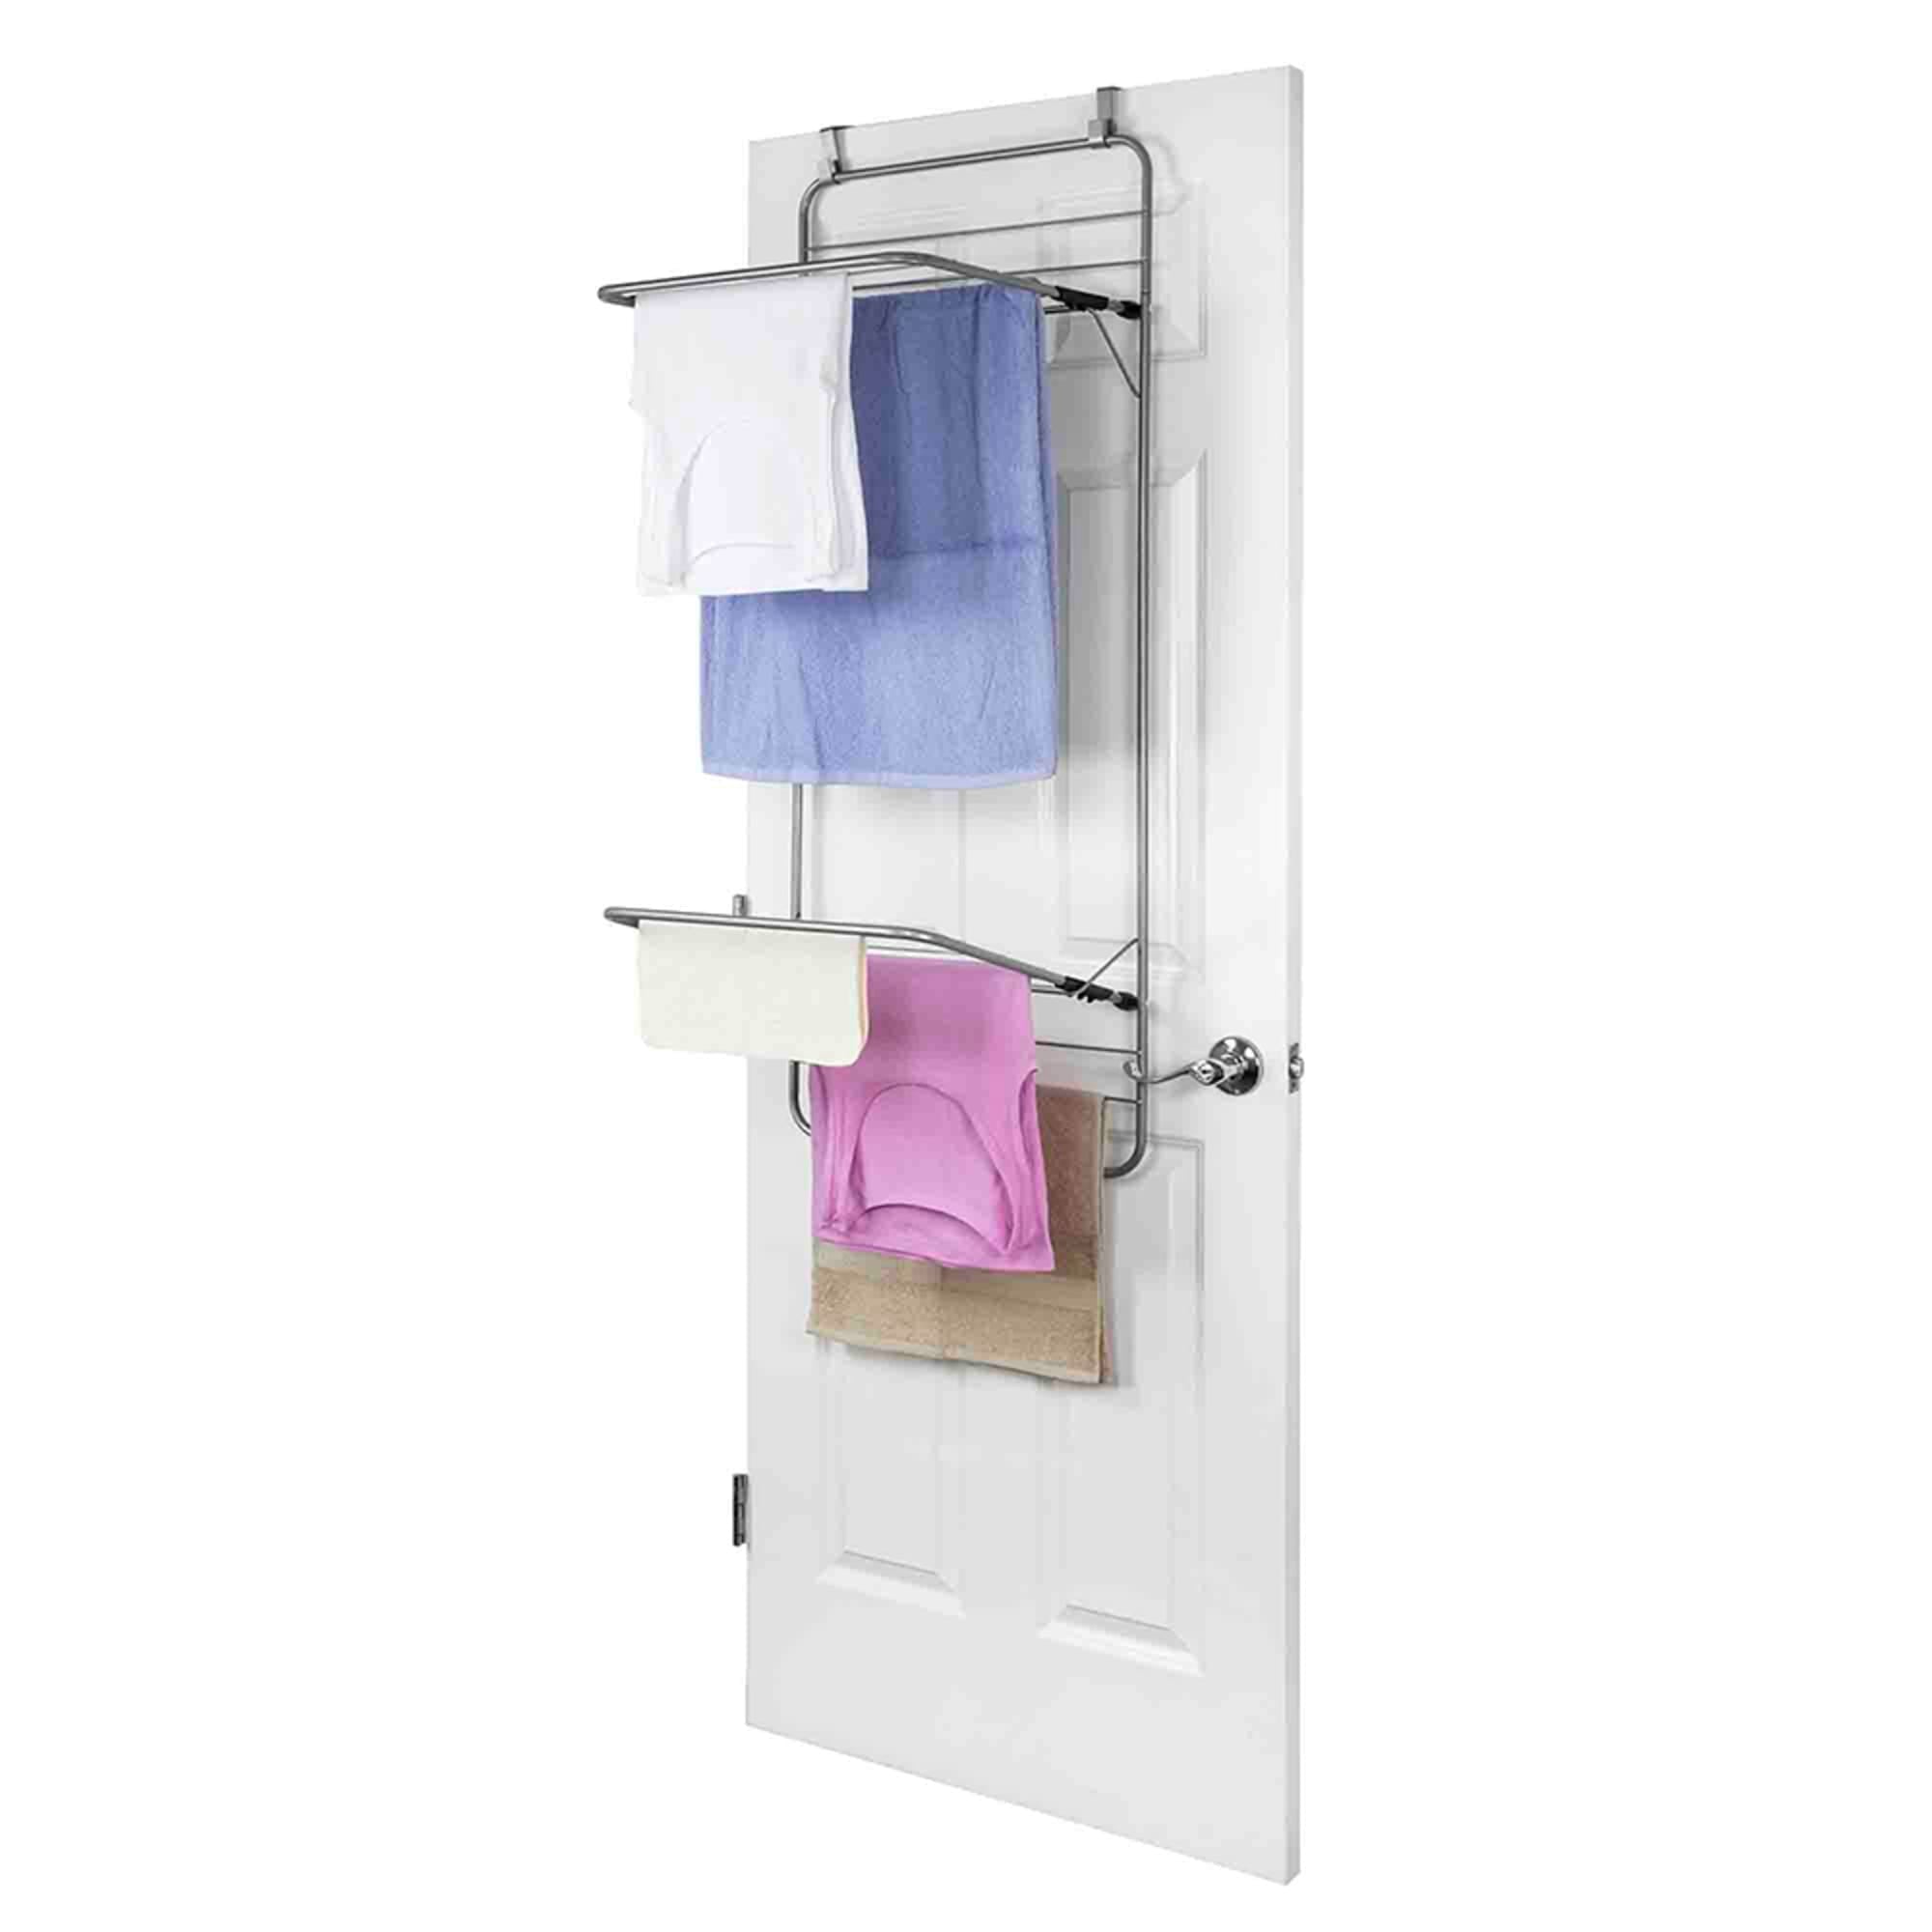 Home Basics Steel Over the Door Towel Dryer Rack, Grey $15.00 EACH, CASE PACK OF 6